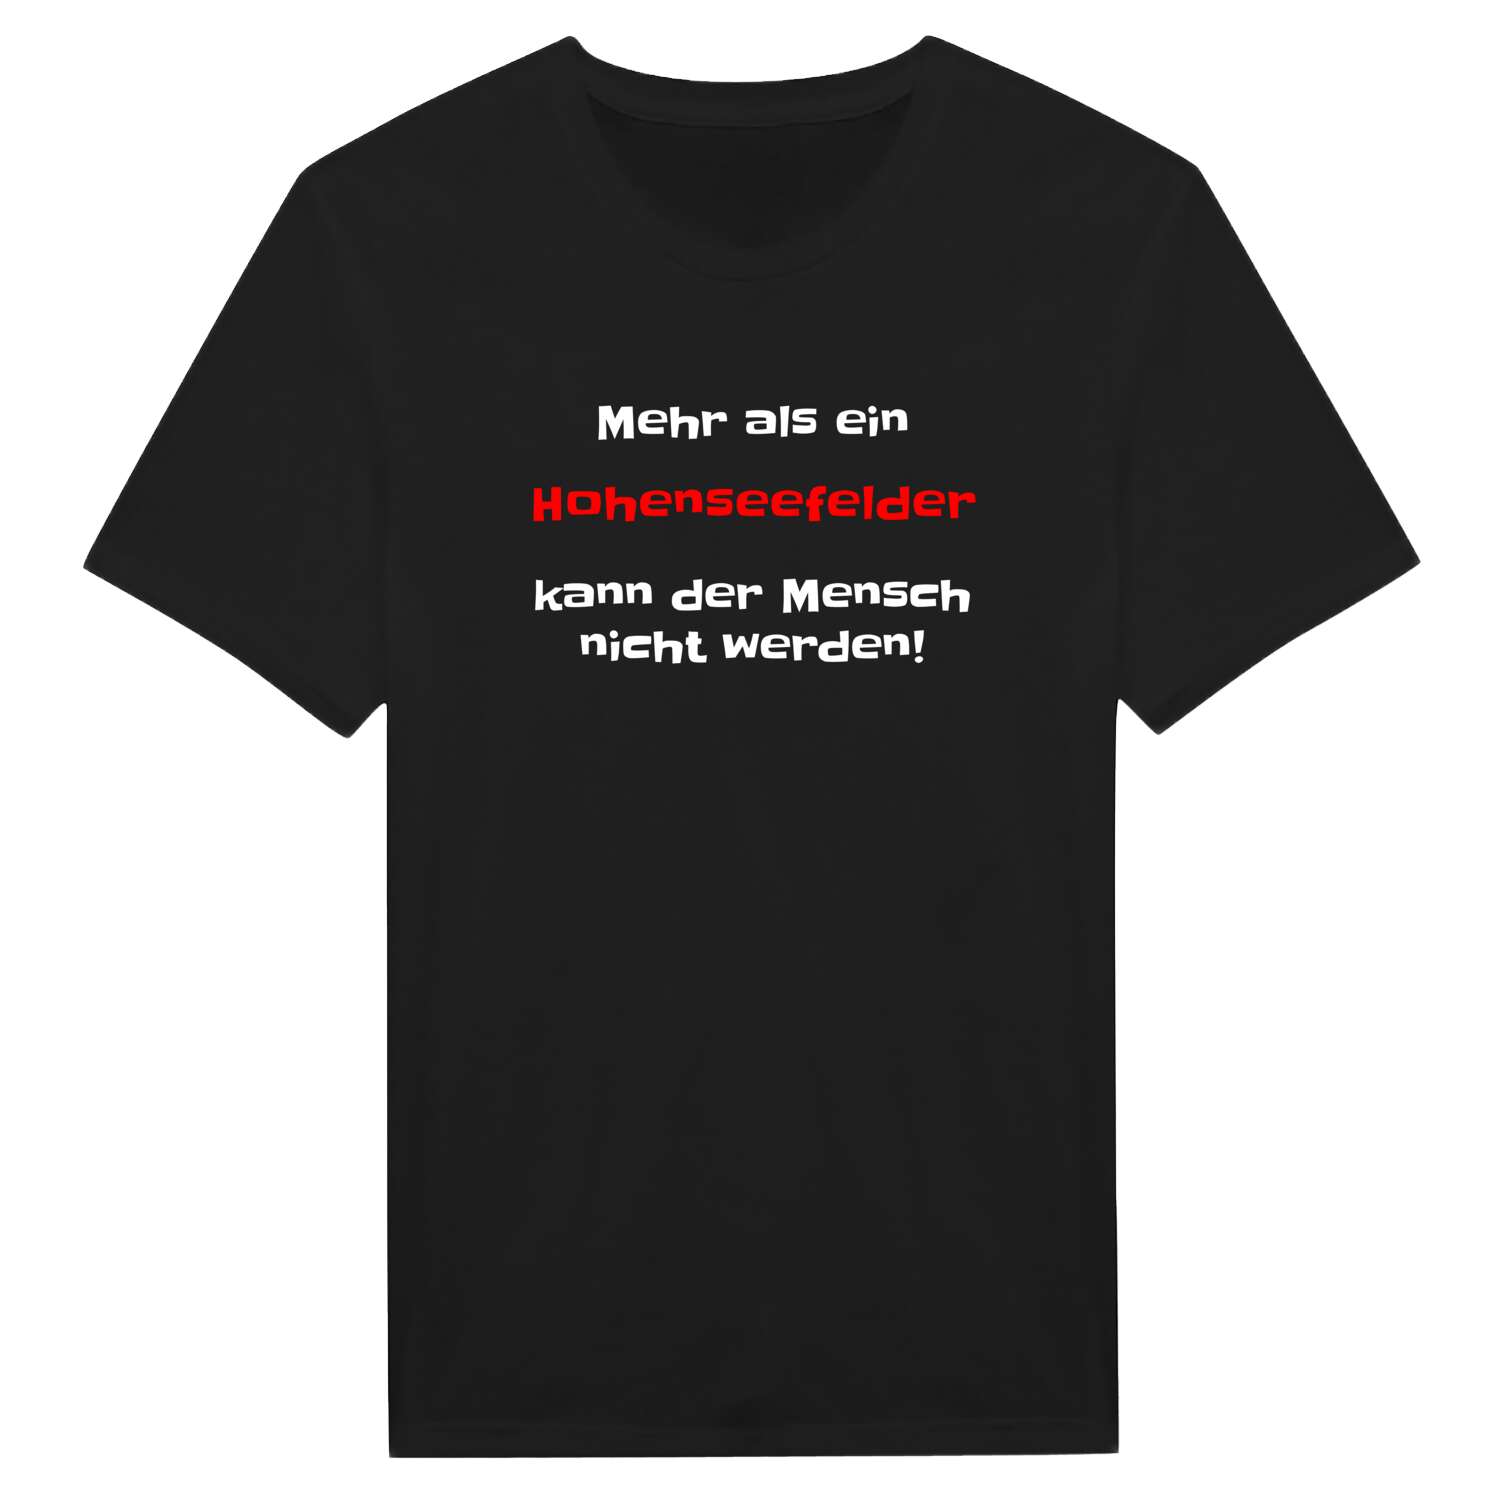 Hohenseefeld T-Shirt »Mehr als ein«